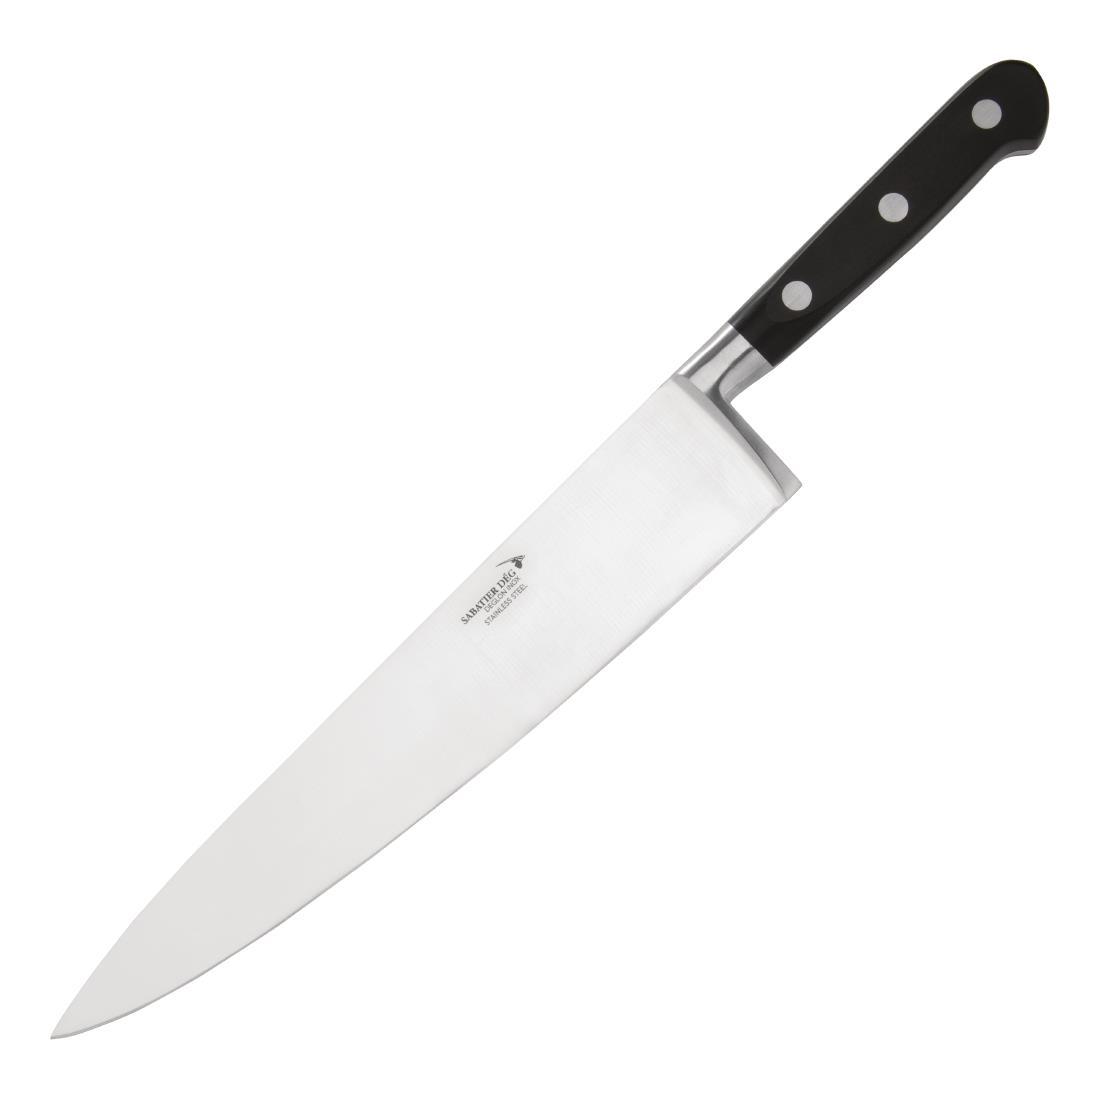 Deglon Modern Knives Set